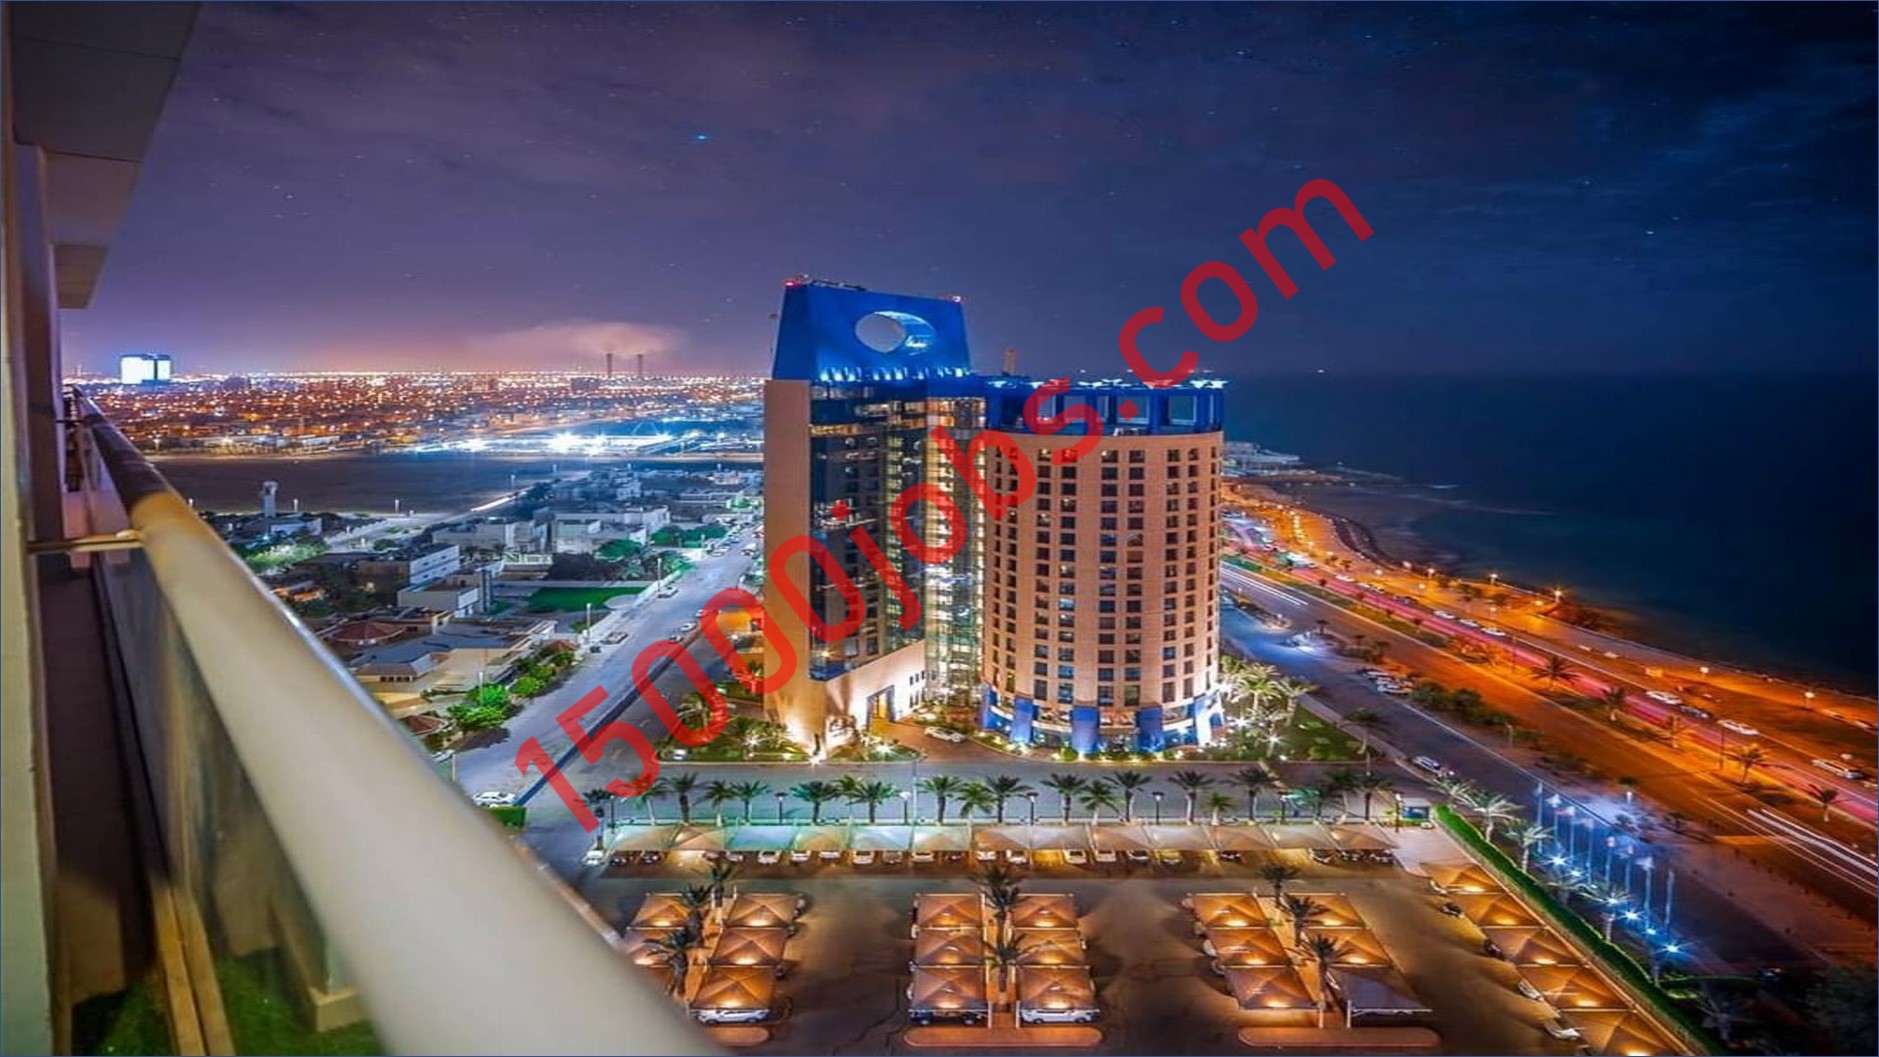 فنادق روزوود للضيافة في ابوظبي تعلن عن فرص وظيفية